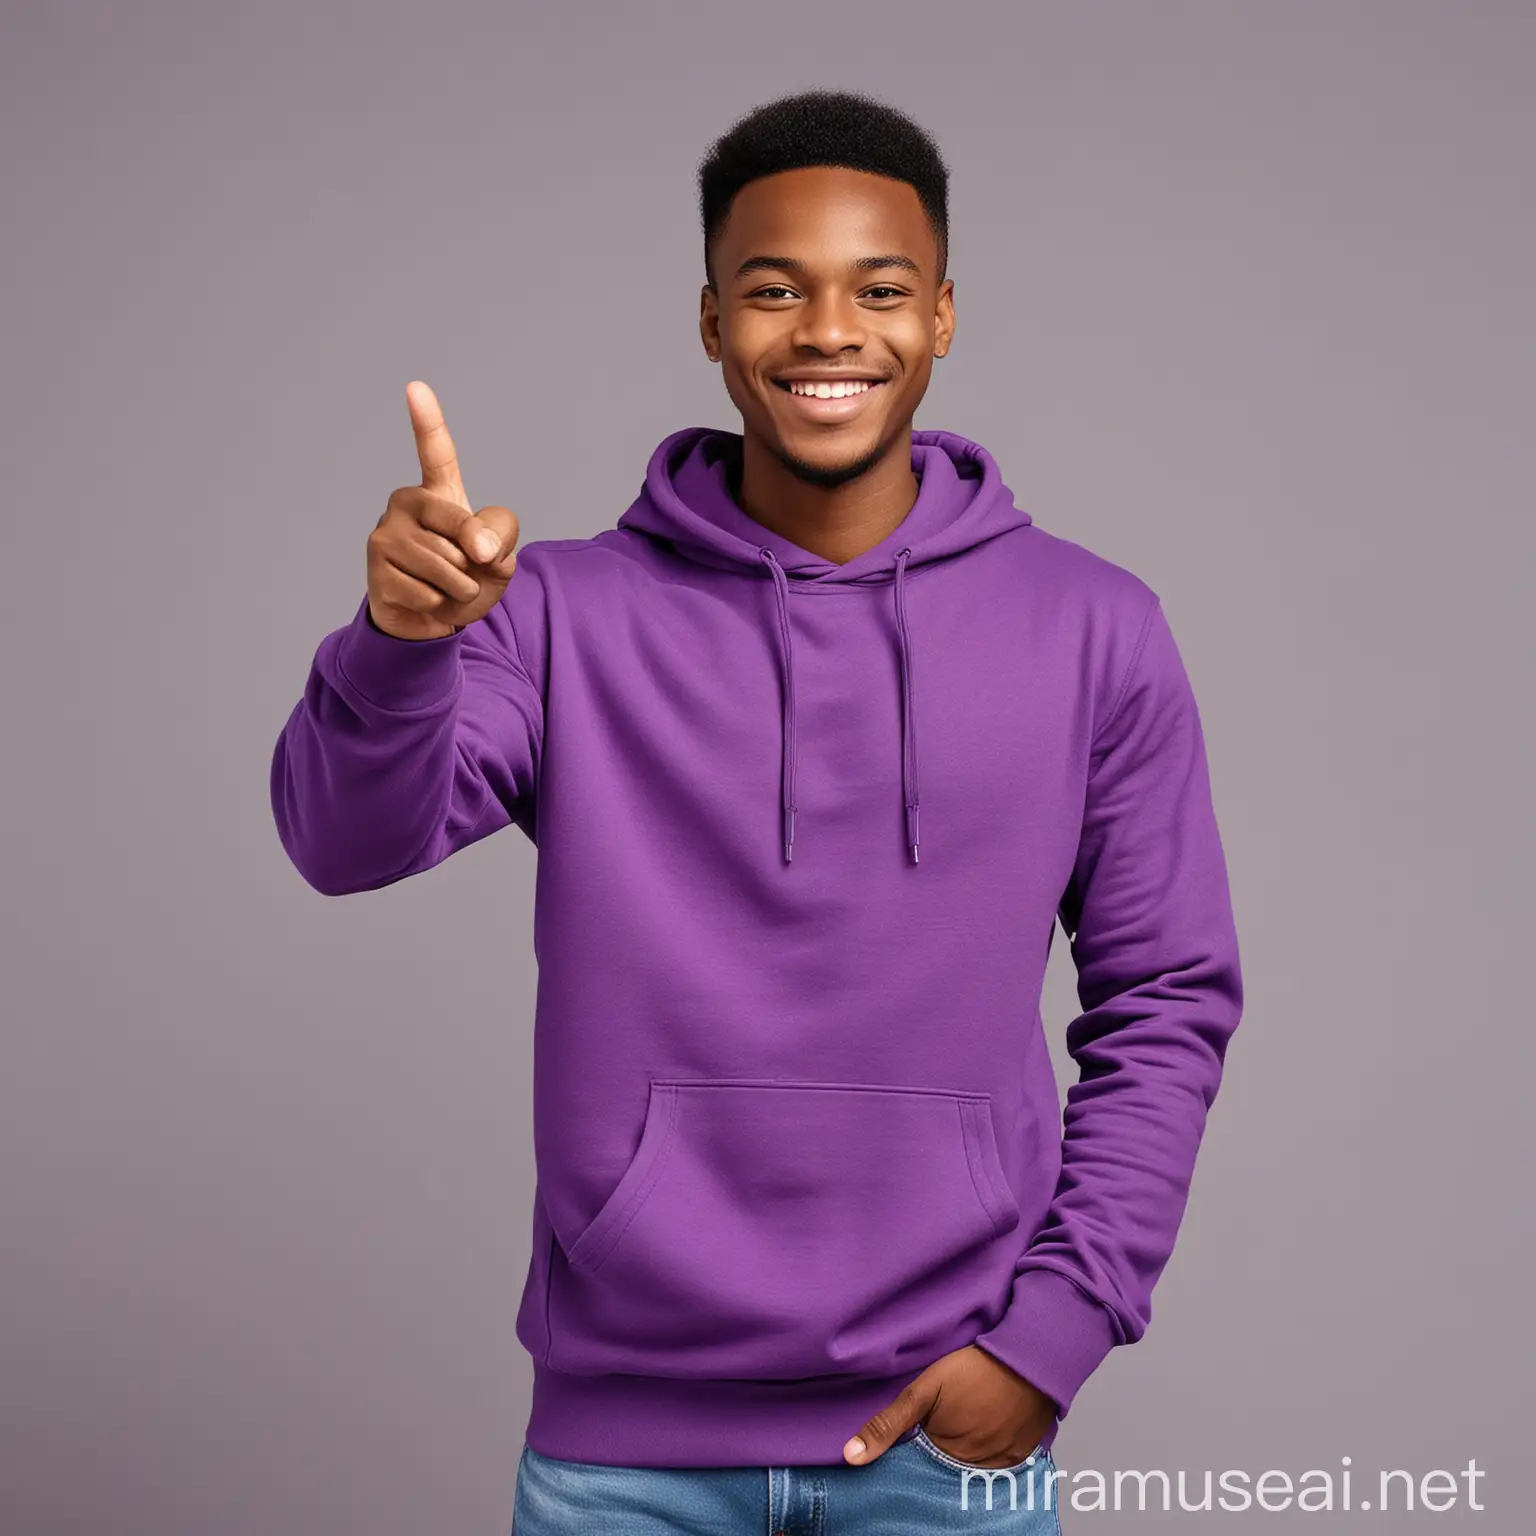 Smiling African Man in Purple Sweatshirt Gesturing Against Gray Background